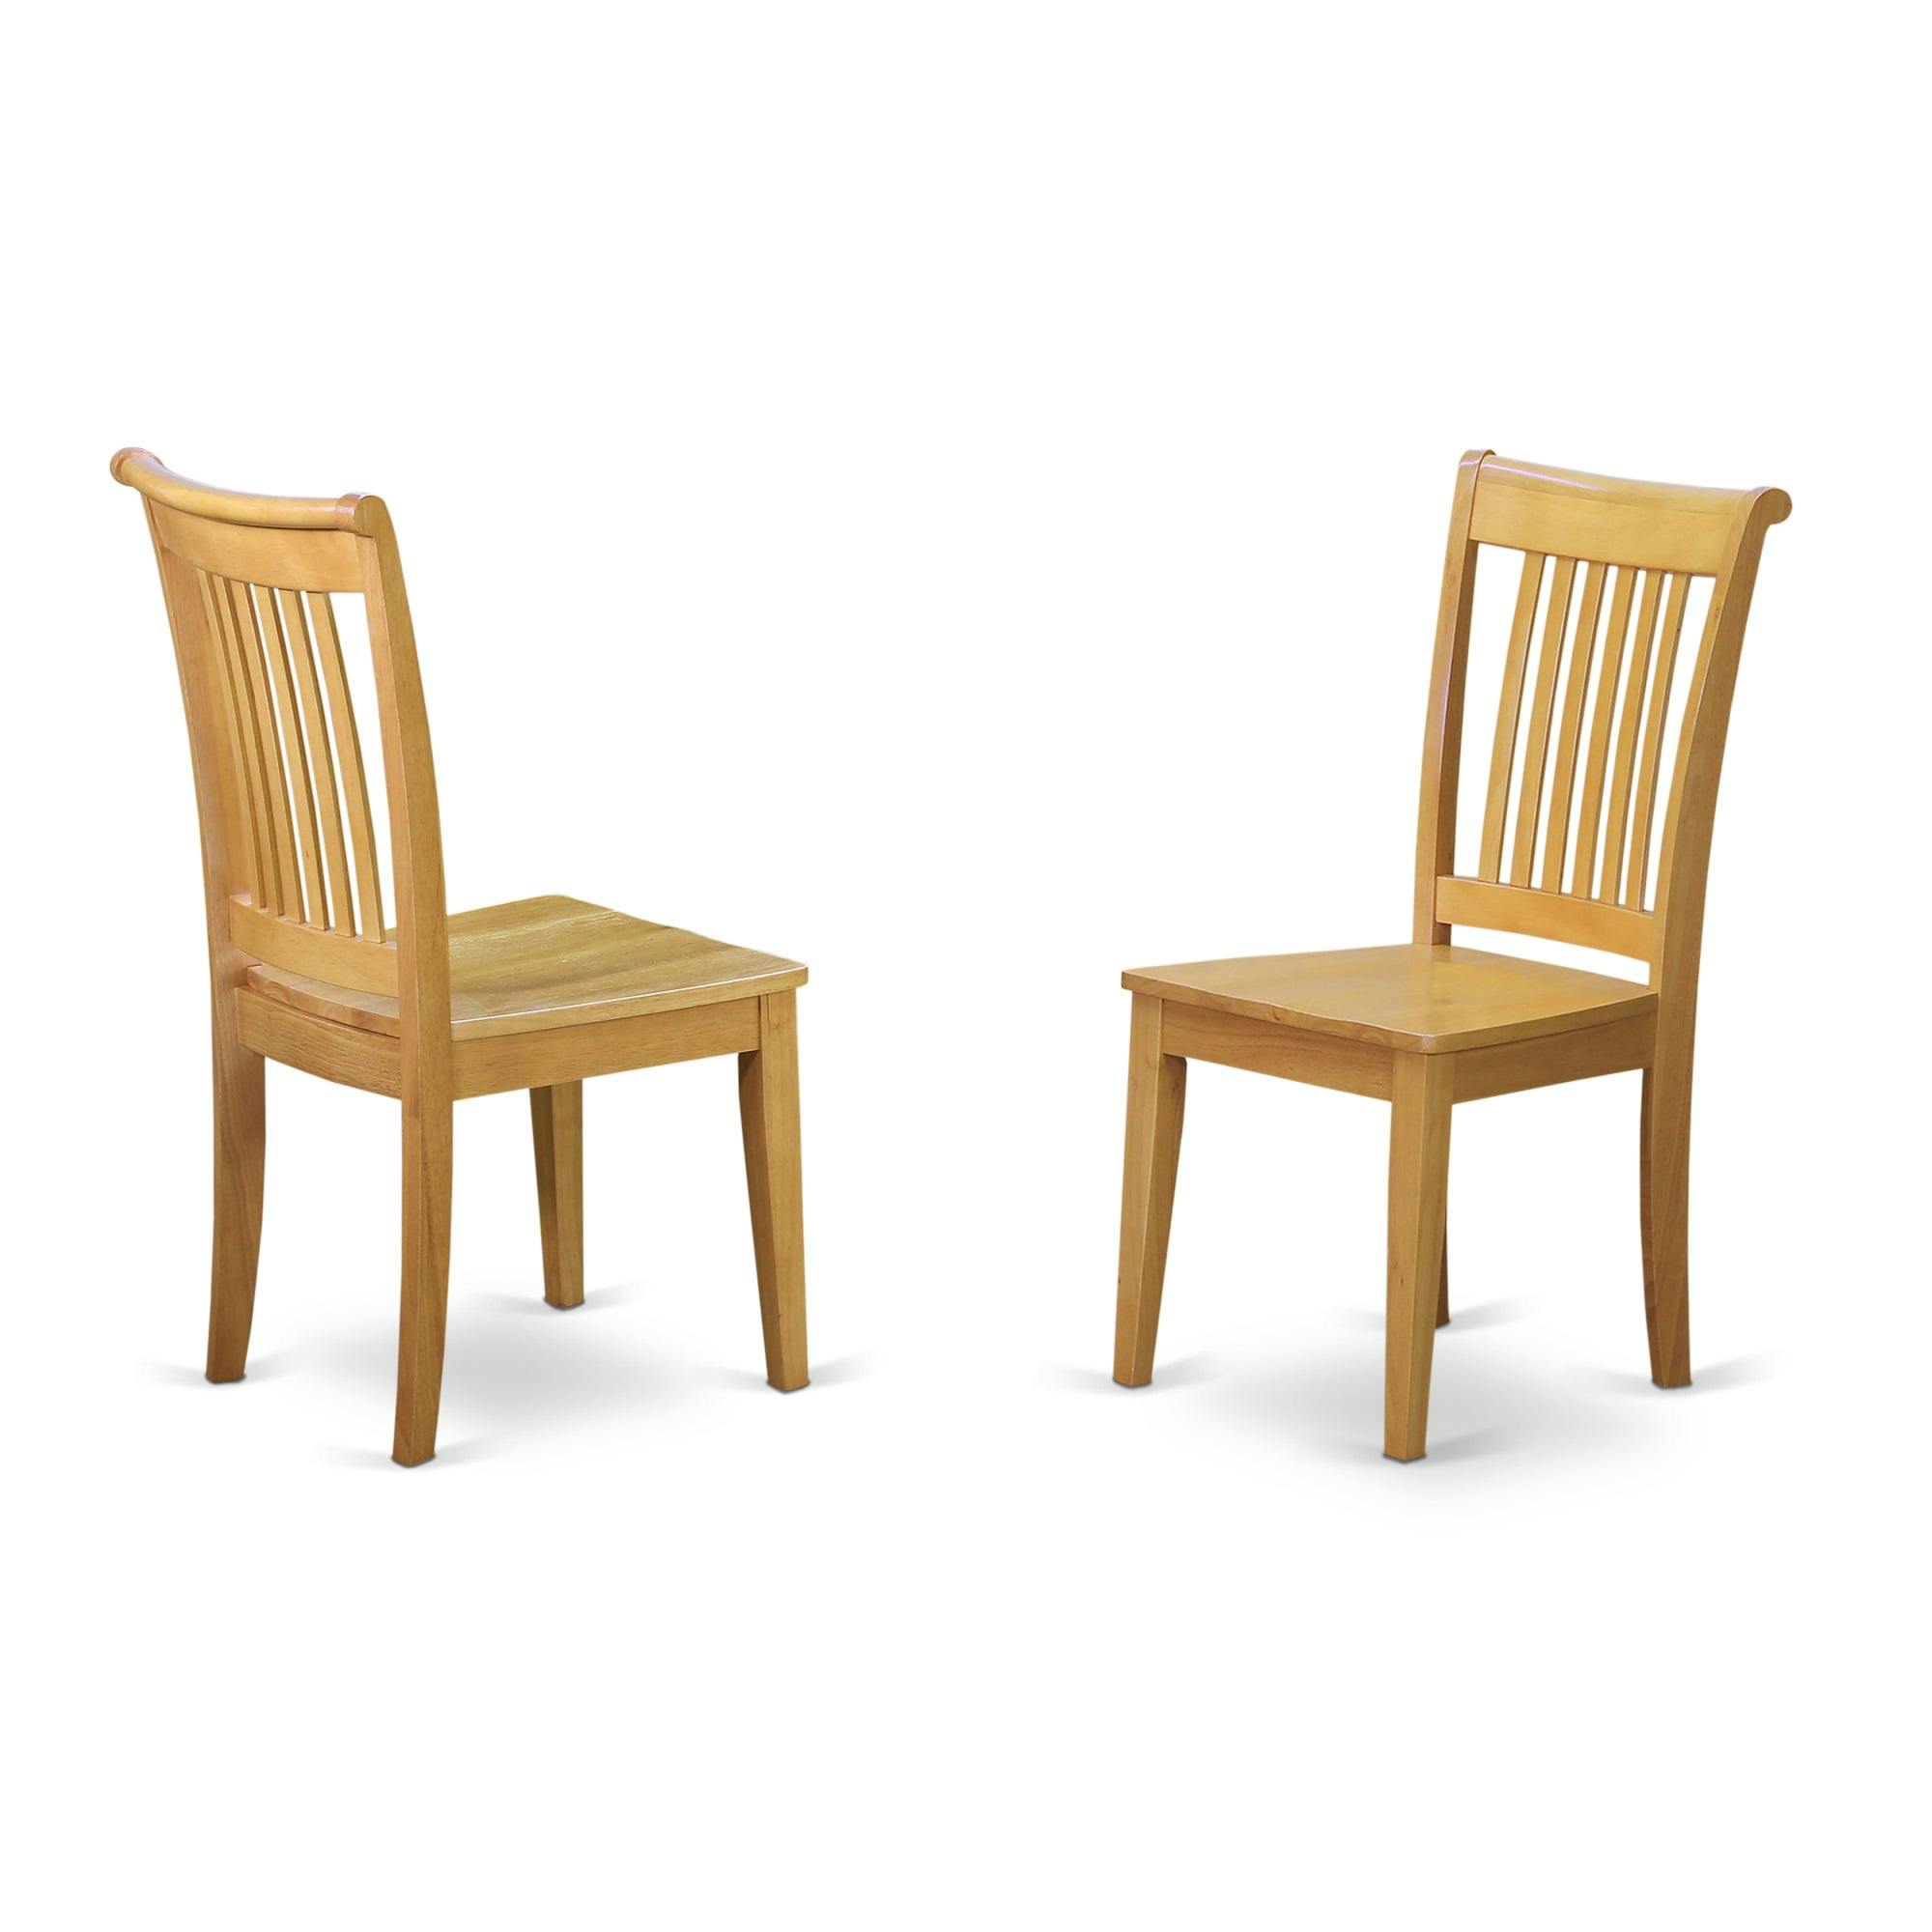 High Slat Back Oak Finish Wood Side Chair Set of 2